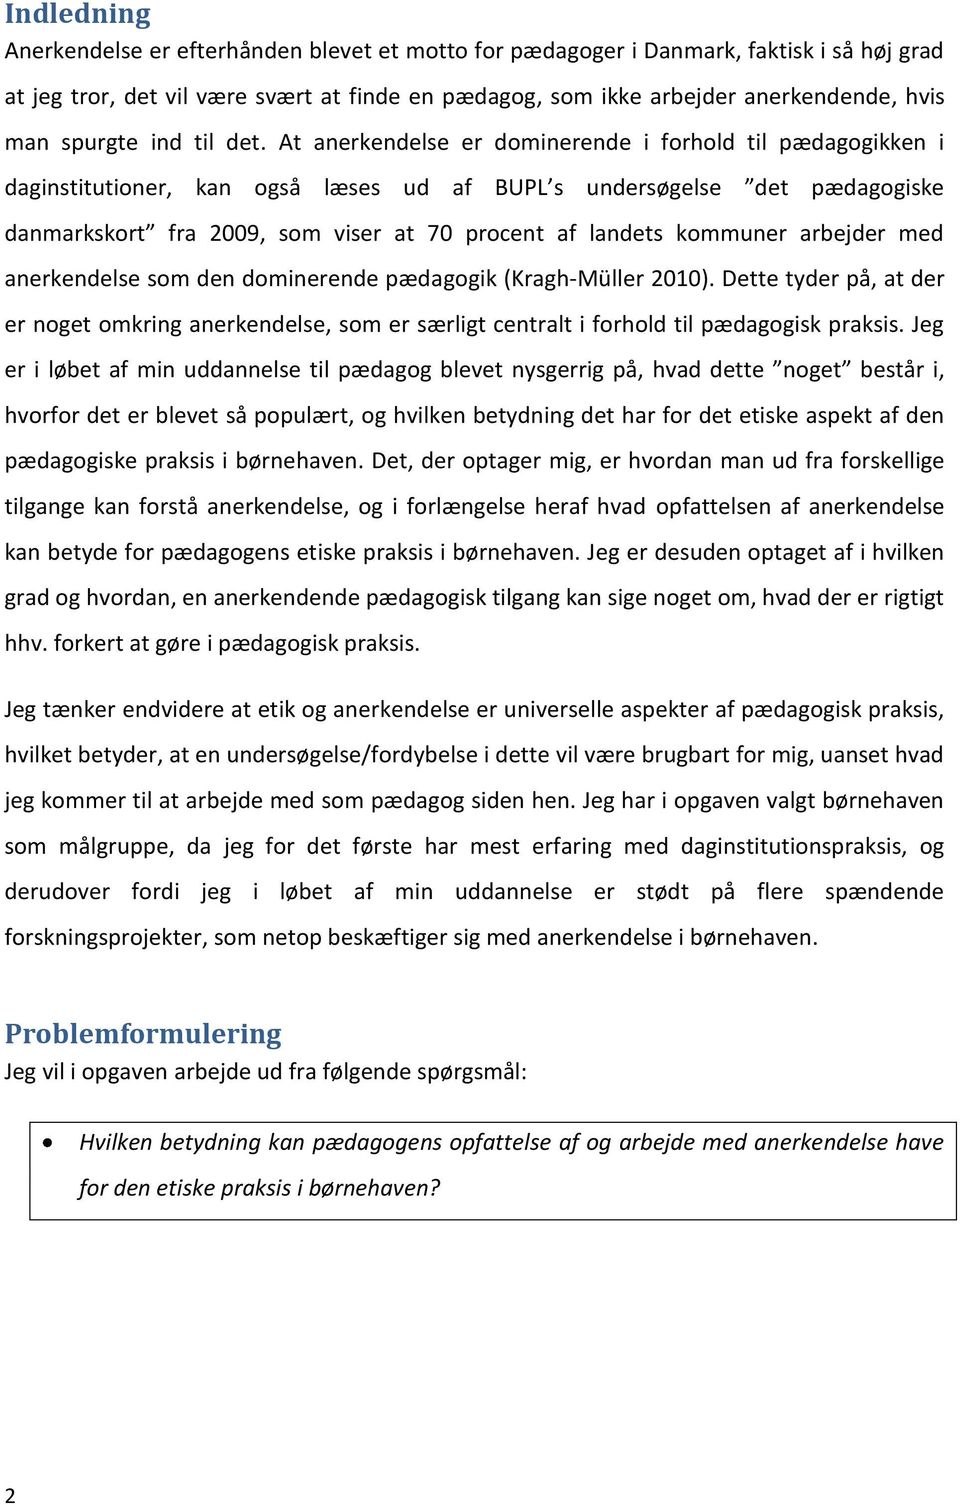 Pædagogens etiske arbejde med anerkendelse i daginstitutionen - PDF Free  Download